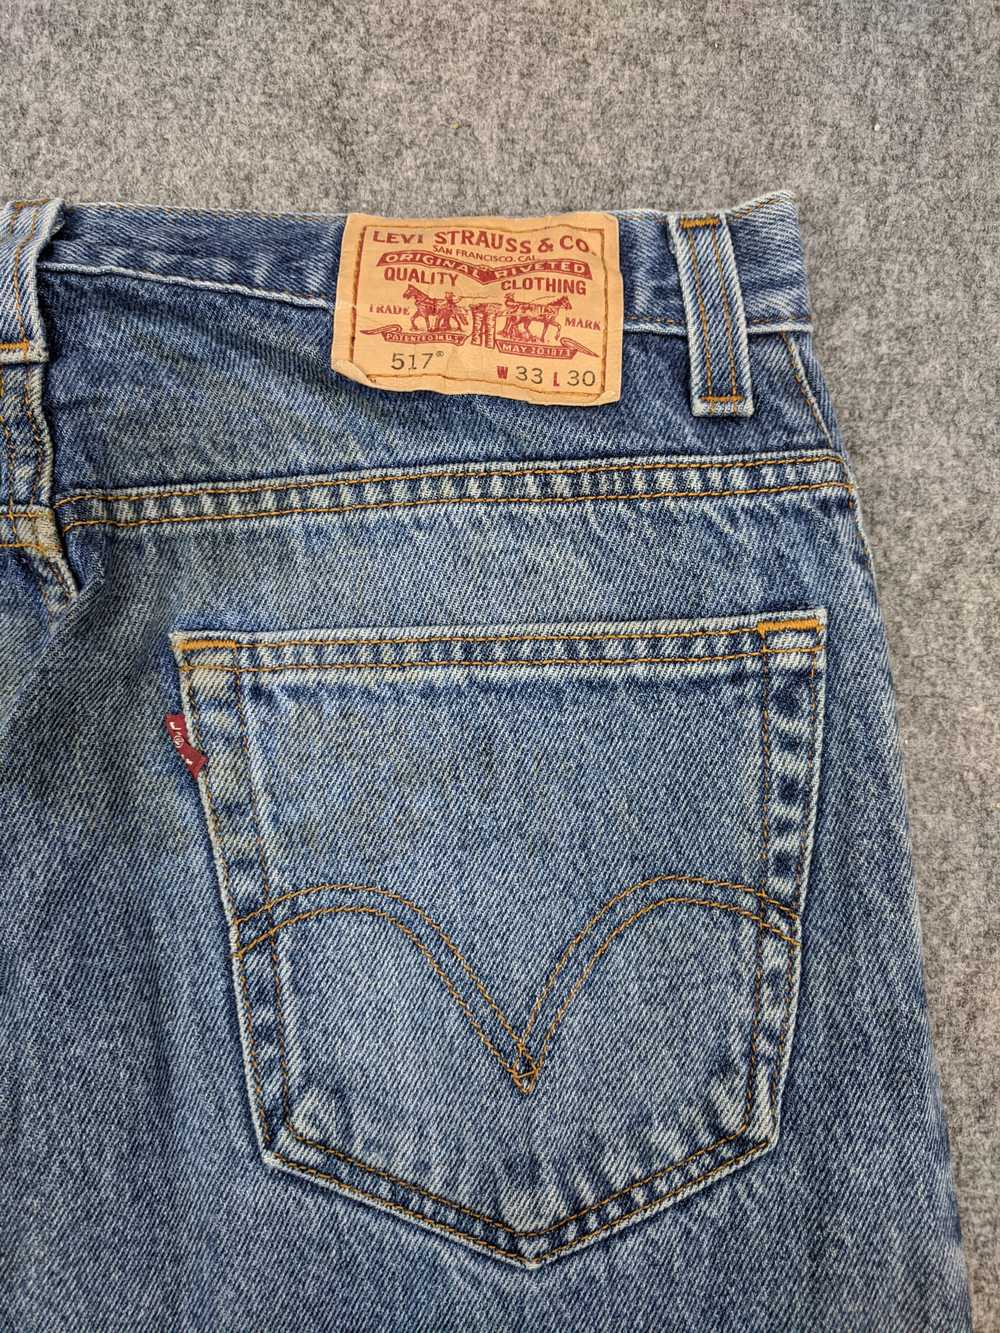 Vintage - Vintage Levis 517 Flared Bootcut Jeans - image 10